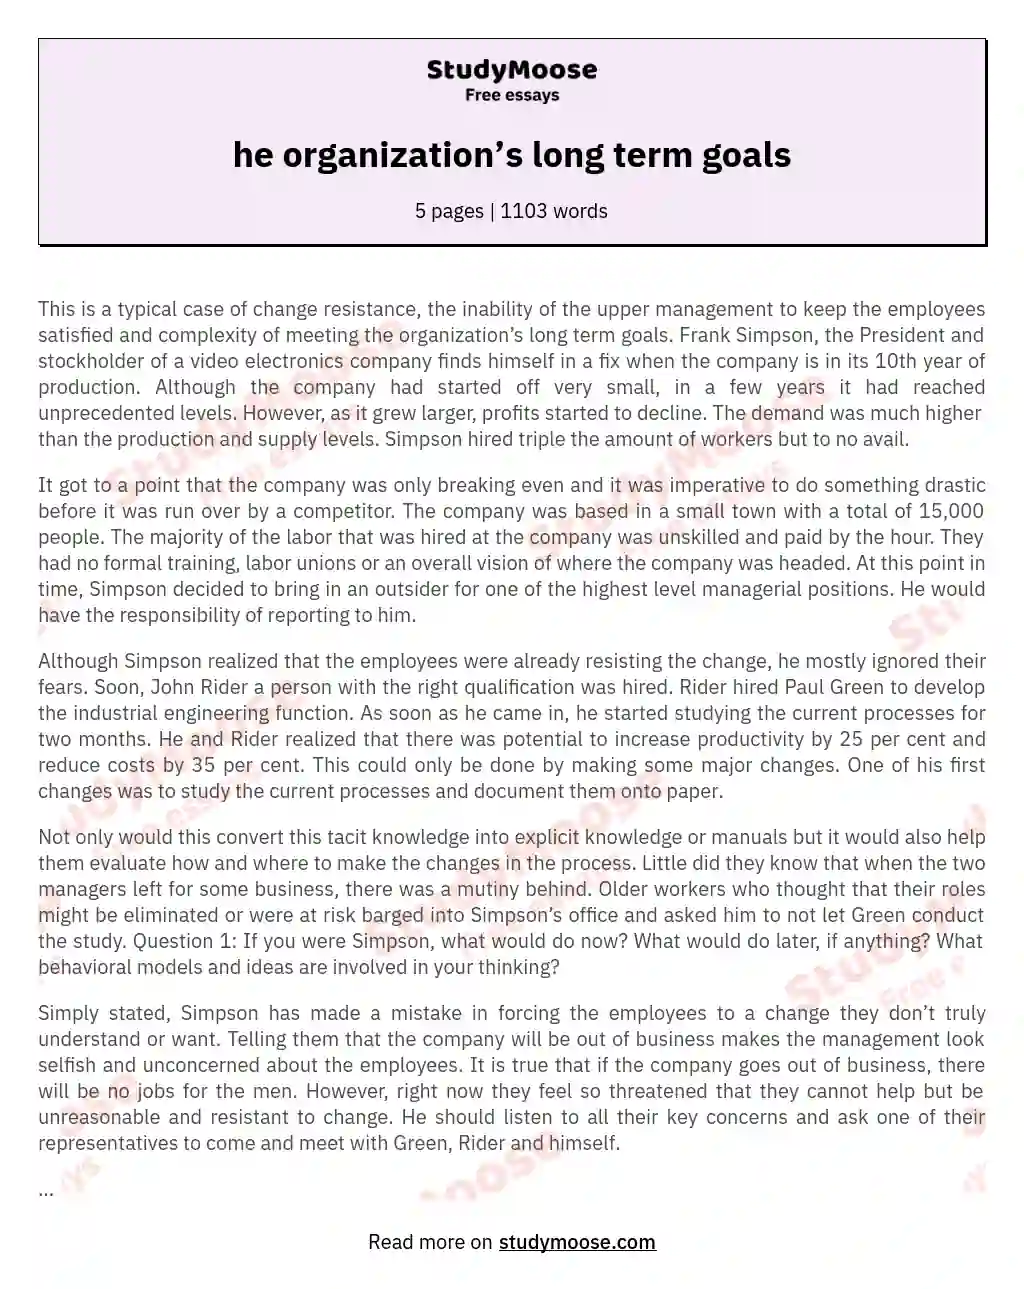 he organization’s long term goals essay